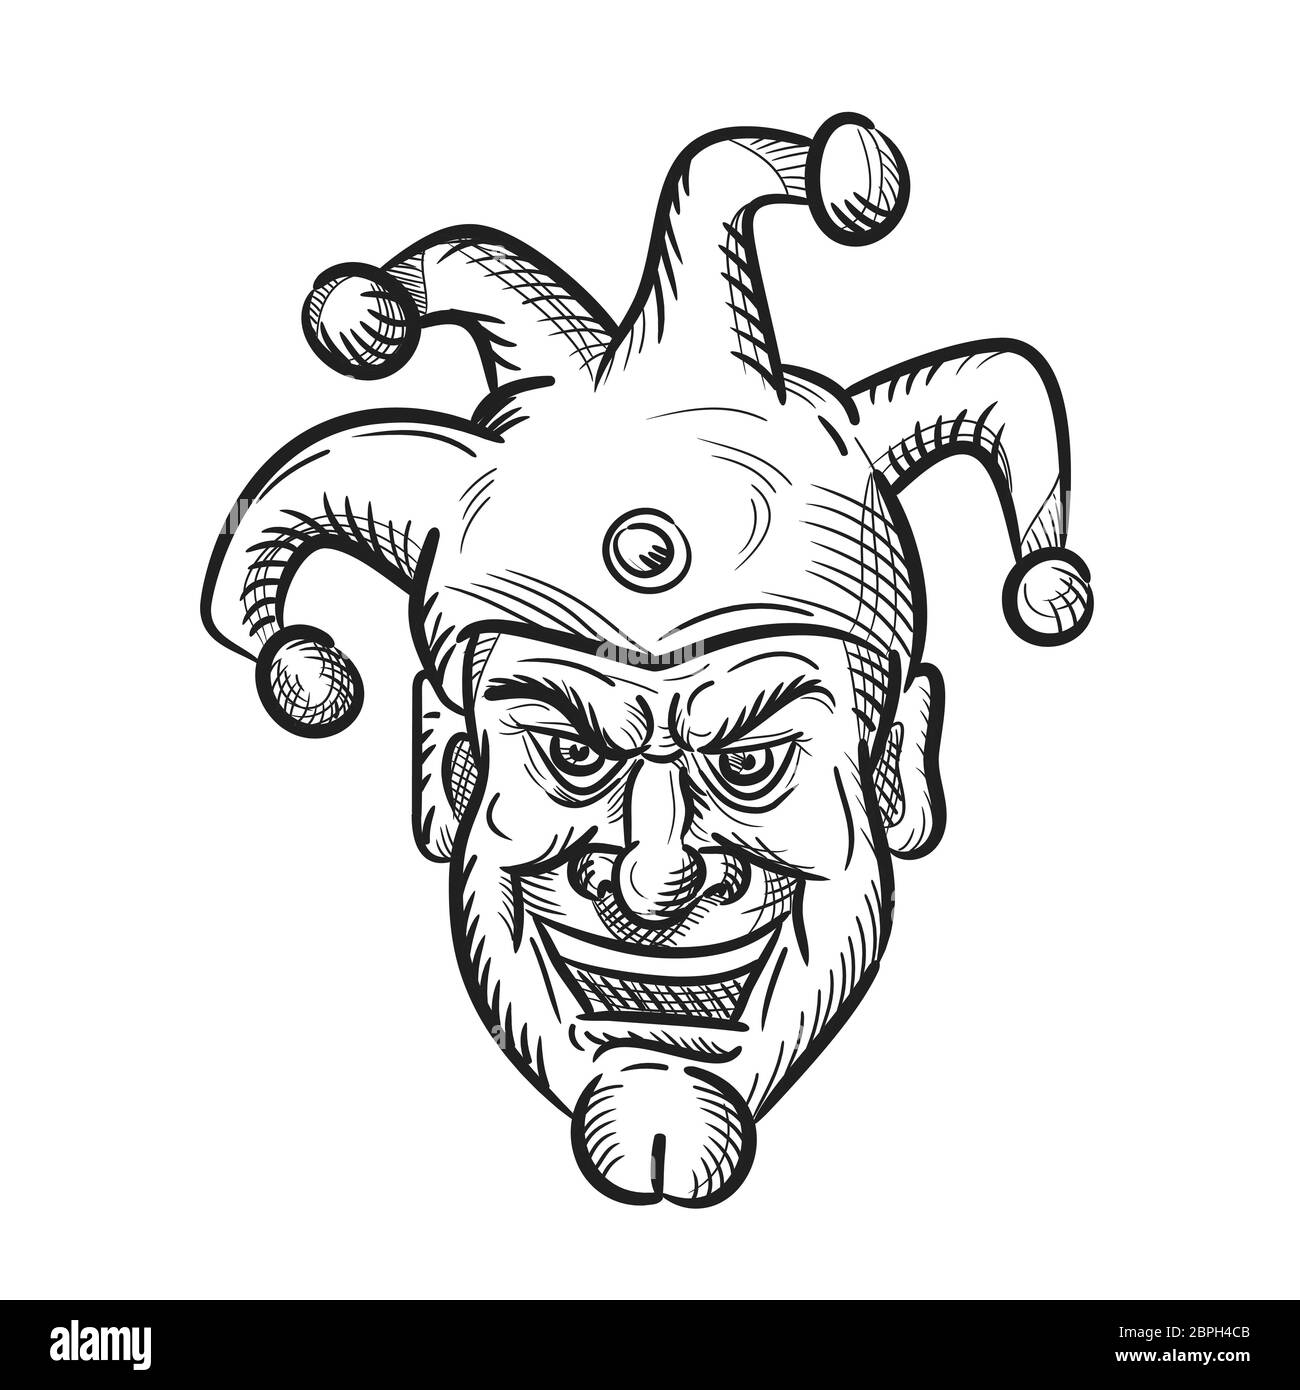 Croquis dessin illustration style de tête d'une cité médiévale fou fou, arlequin ou fou avec un sourire stupide sourire sarcastique ou isolé sur blanc b Banque D'Images